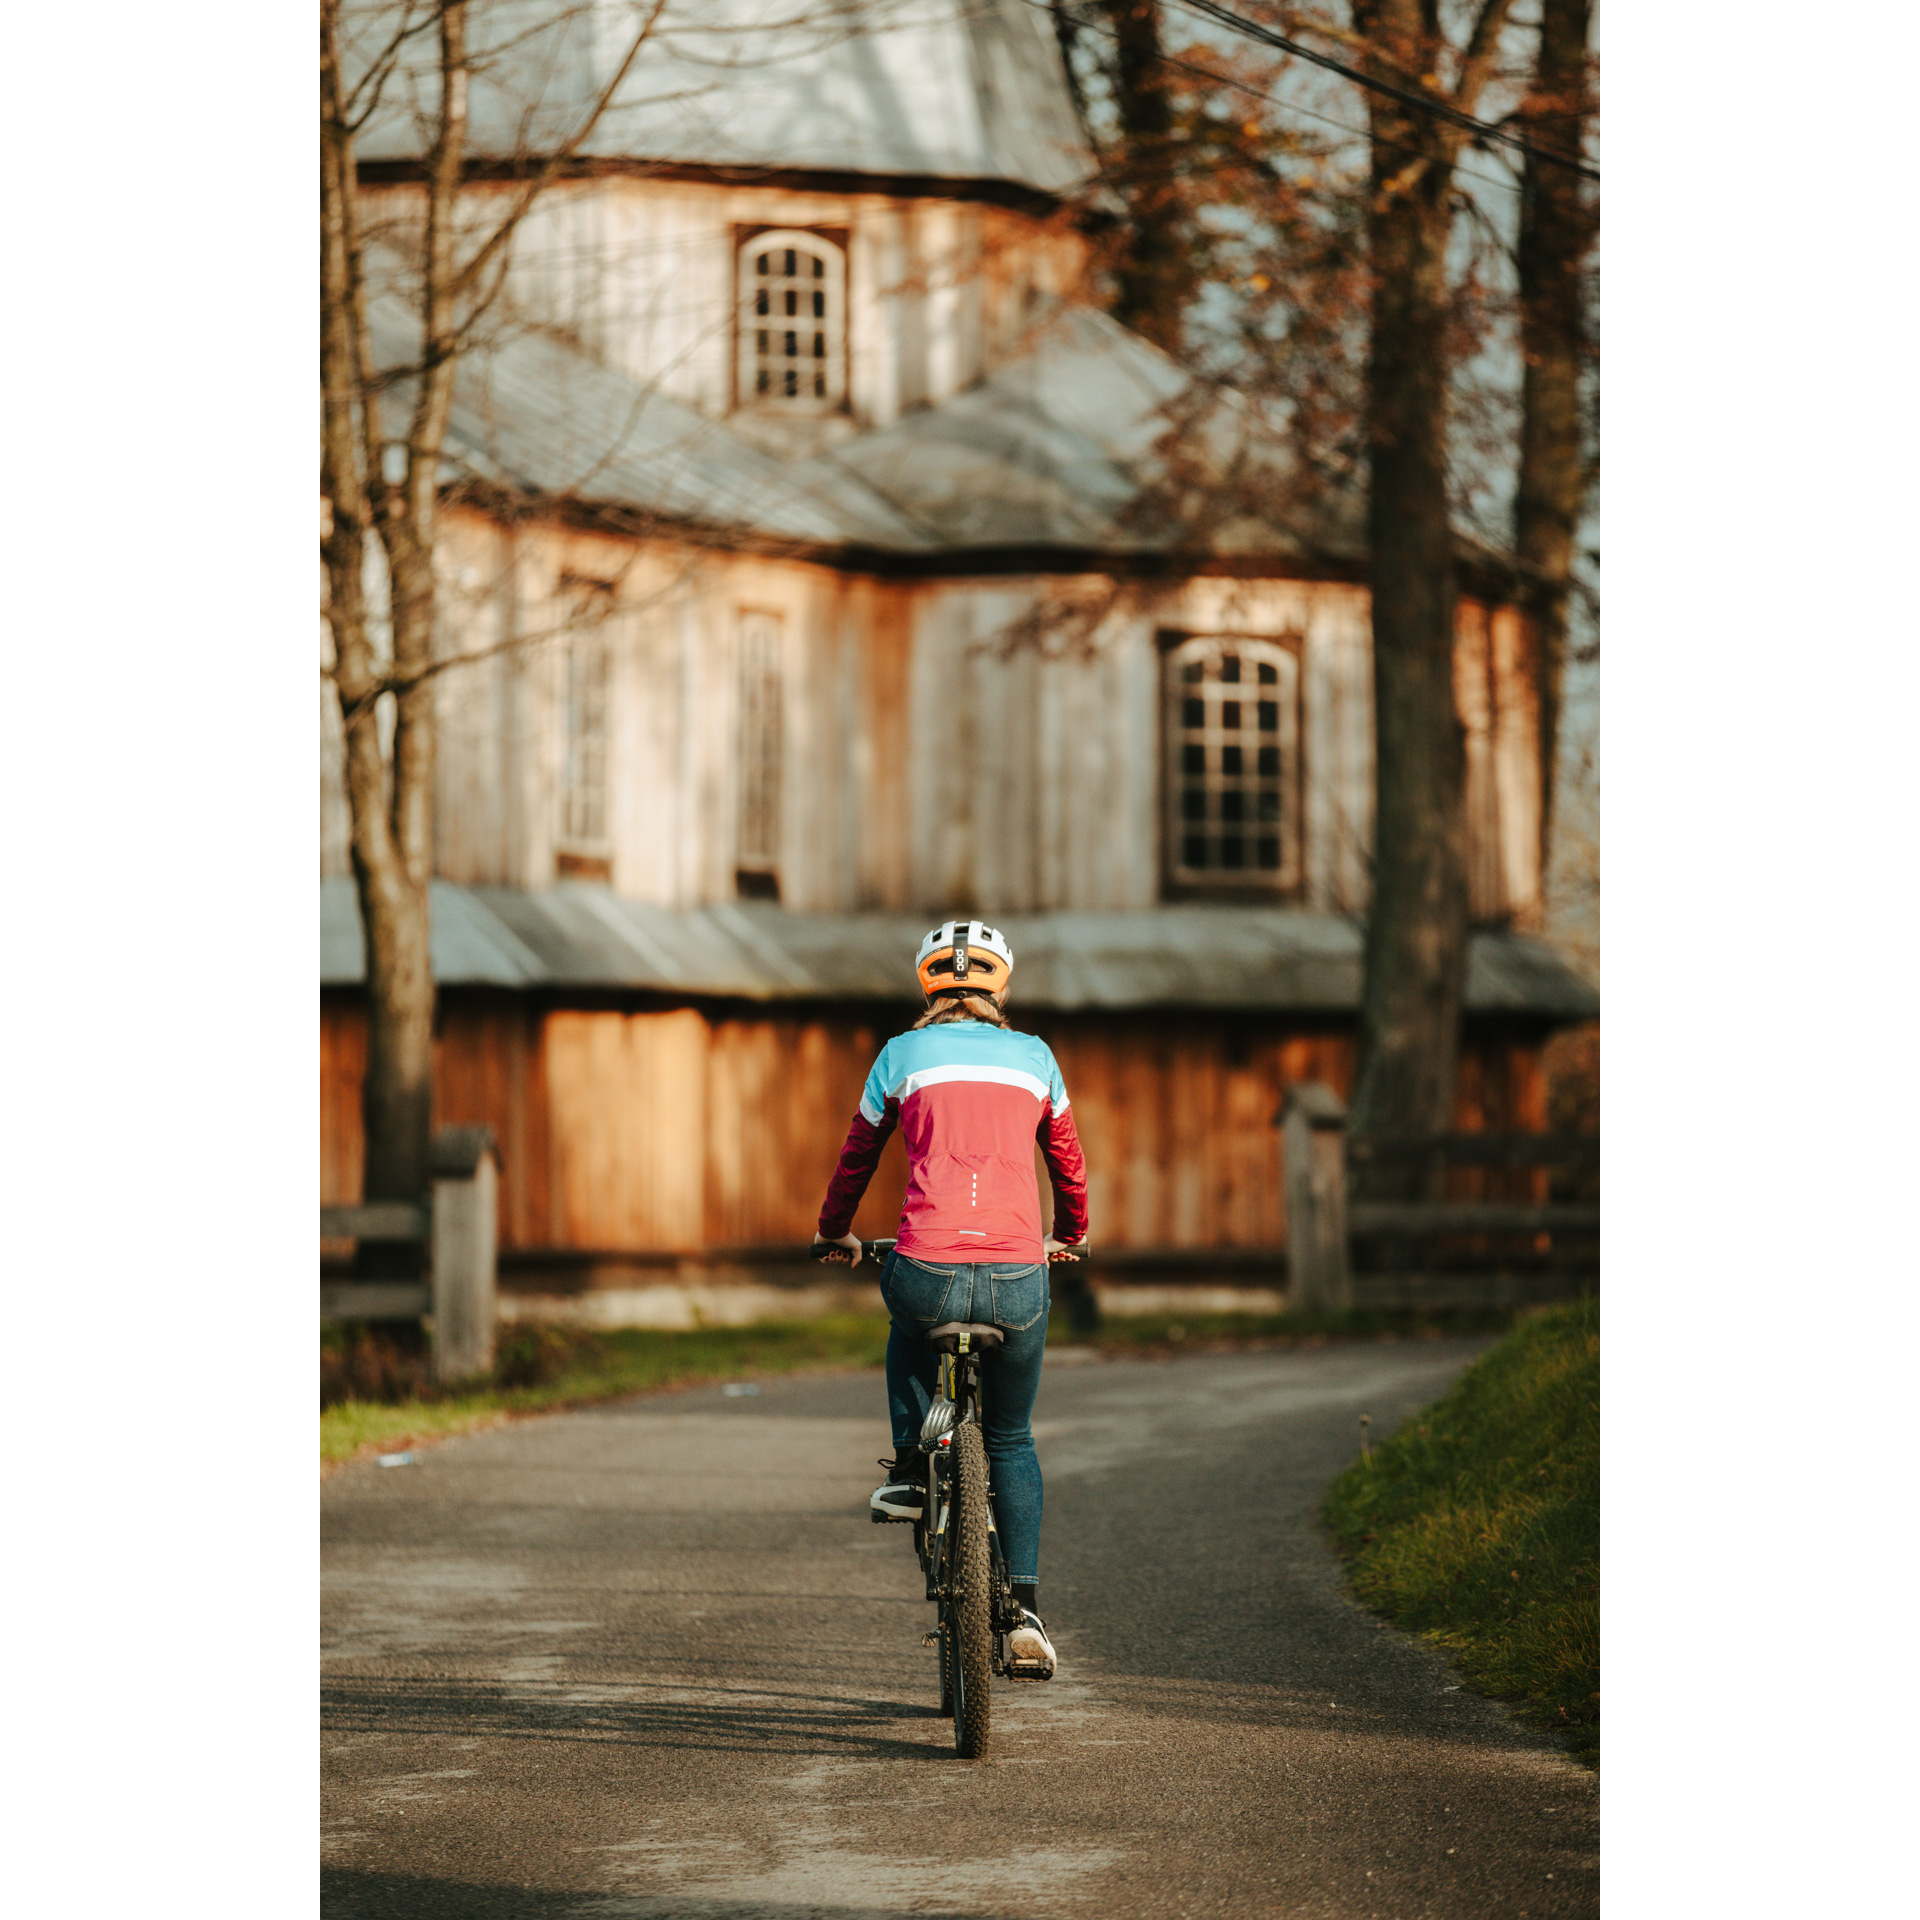 Rowerzystka w czerwono-niebieskiej kurtce i kasku jadąca rowerem po asfaltowej drodze, zmierzająca w stronę drewnianego kościoła